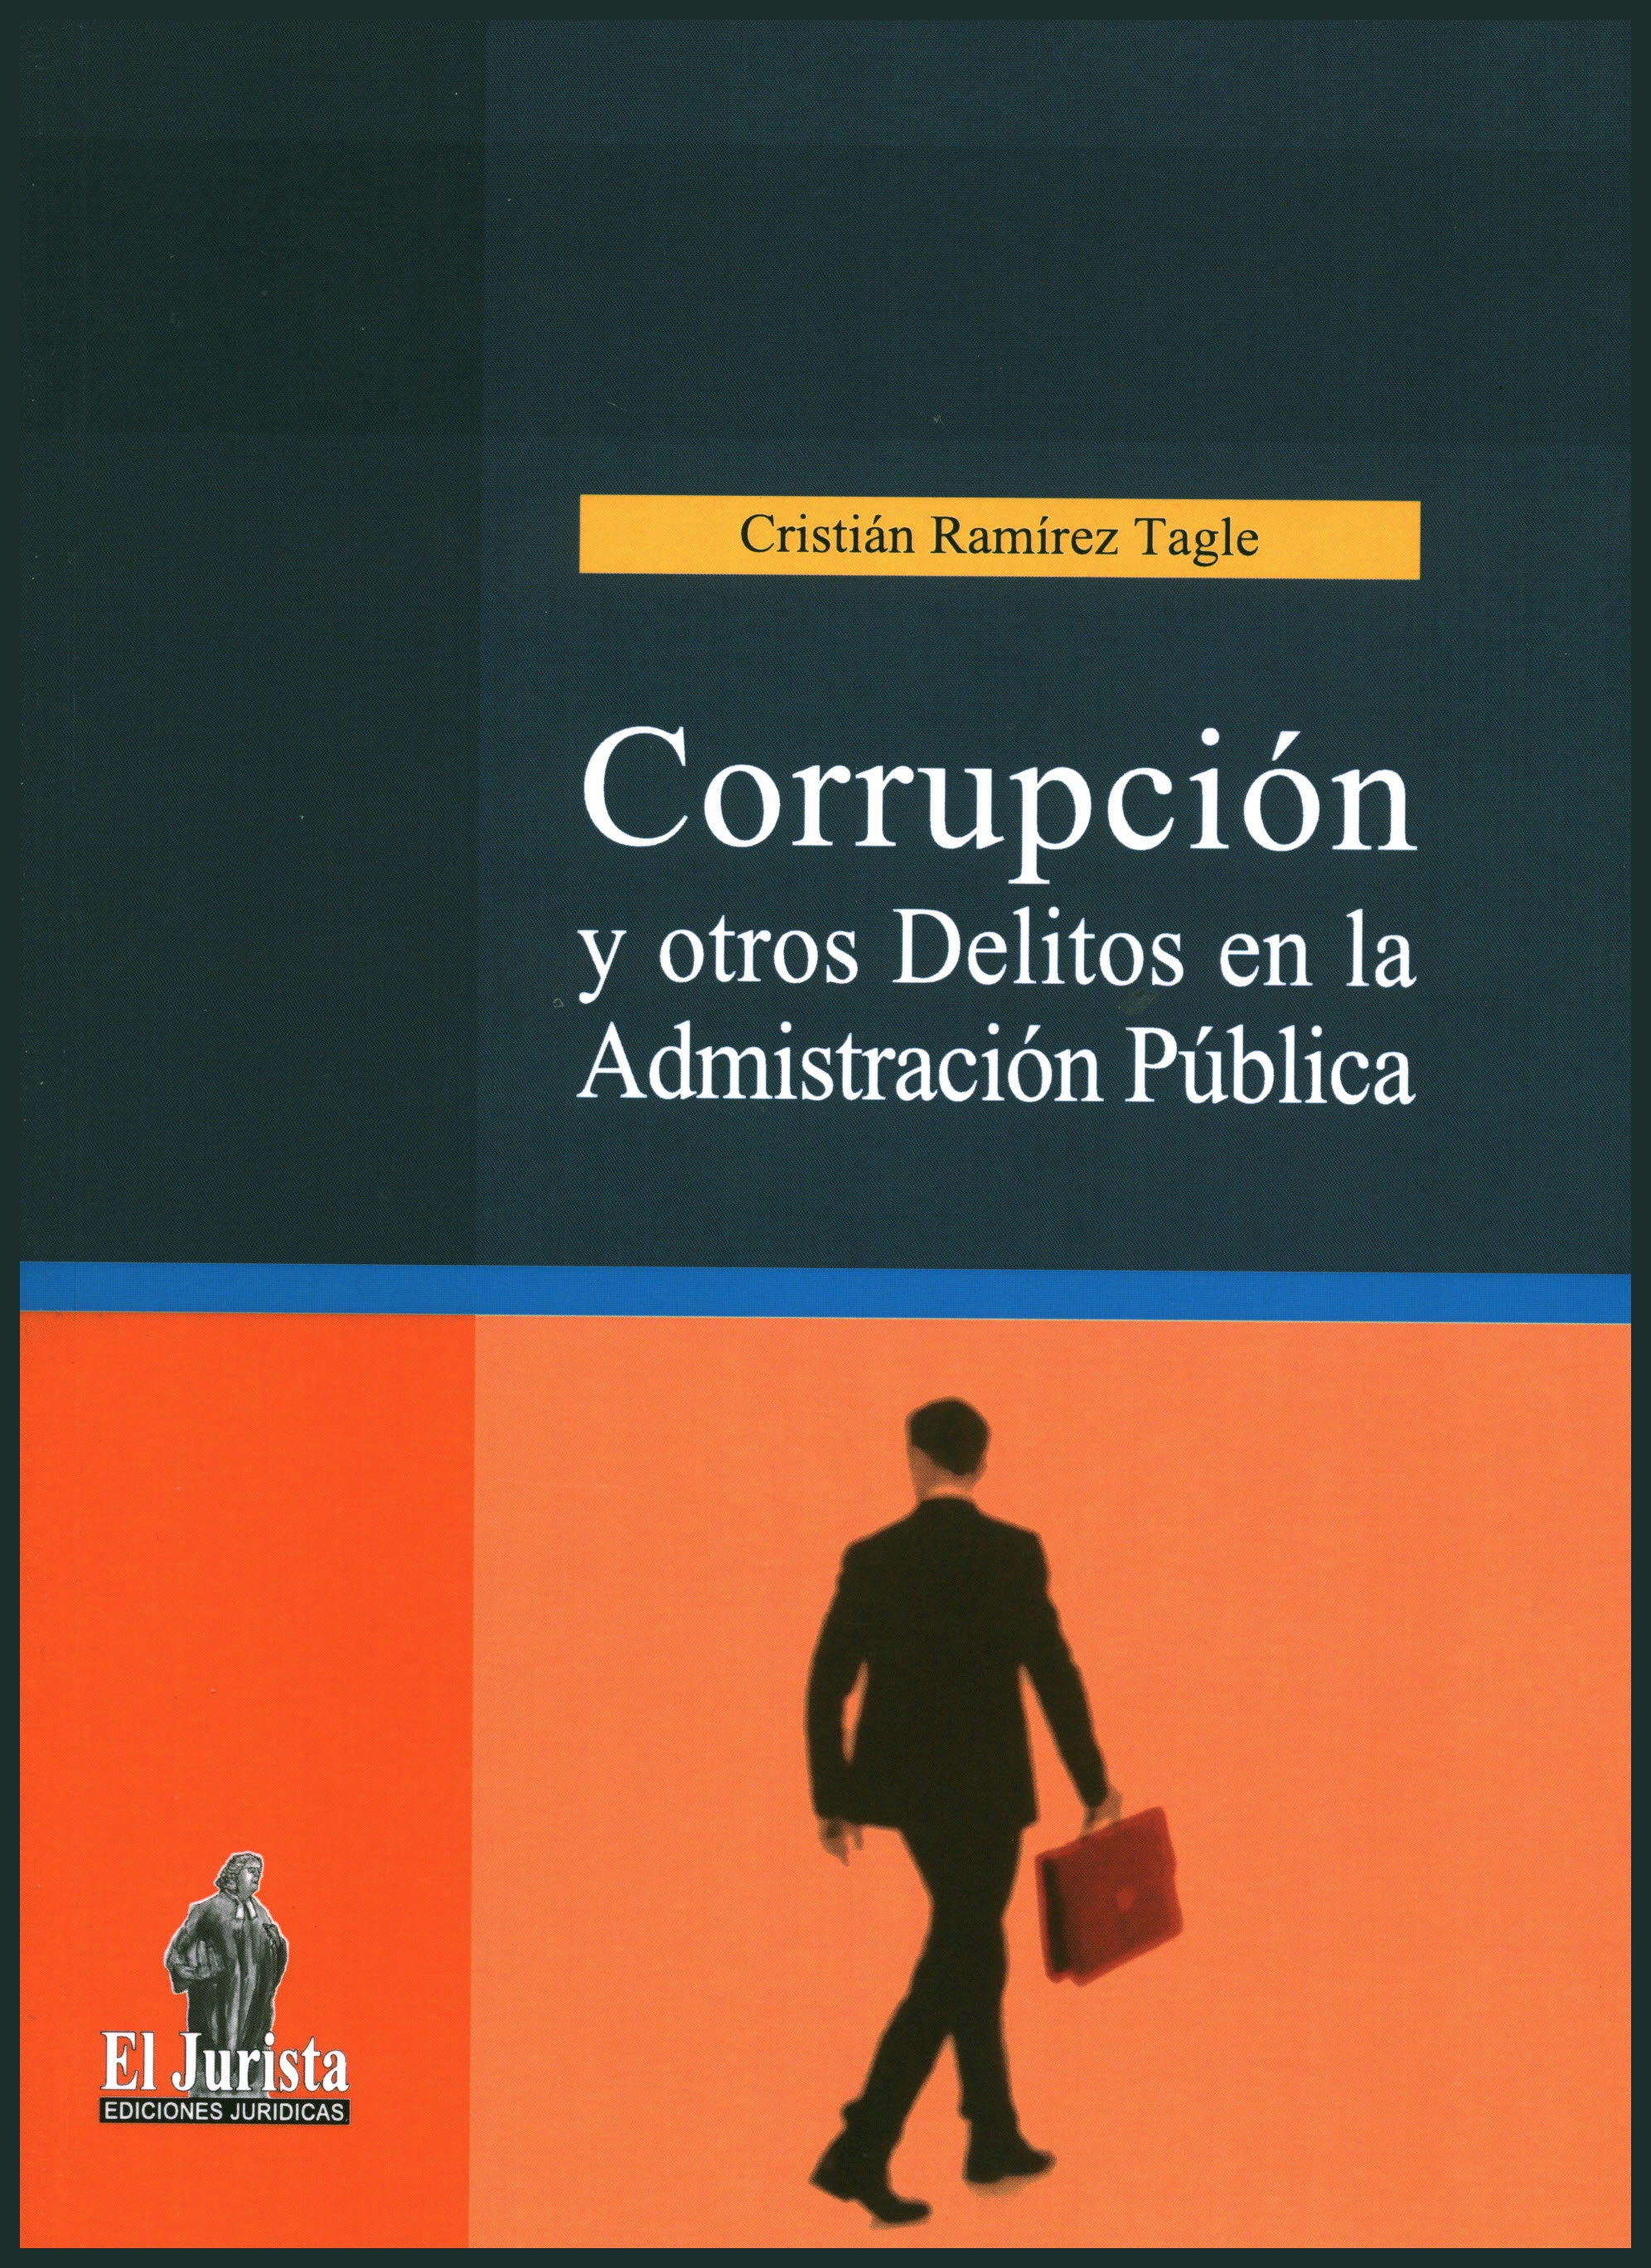 Corrupción y otros delitos en la administración pública. Título V libro II Código penal parrafos n°s 5, 6, 9 y 9 bis